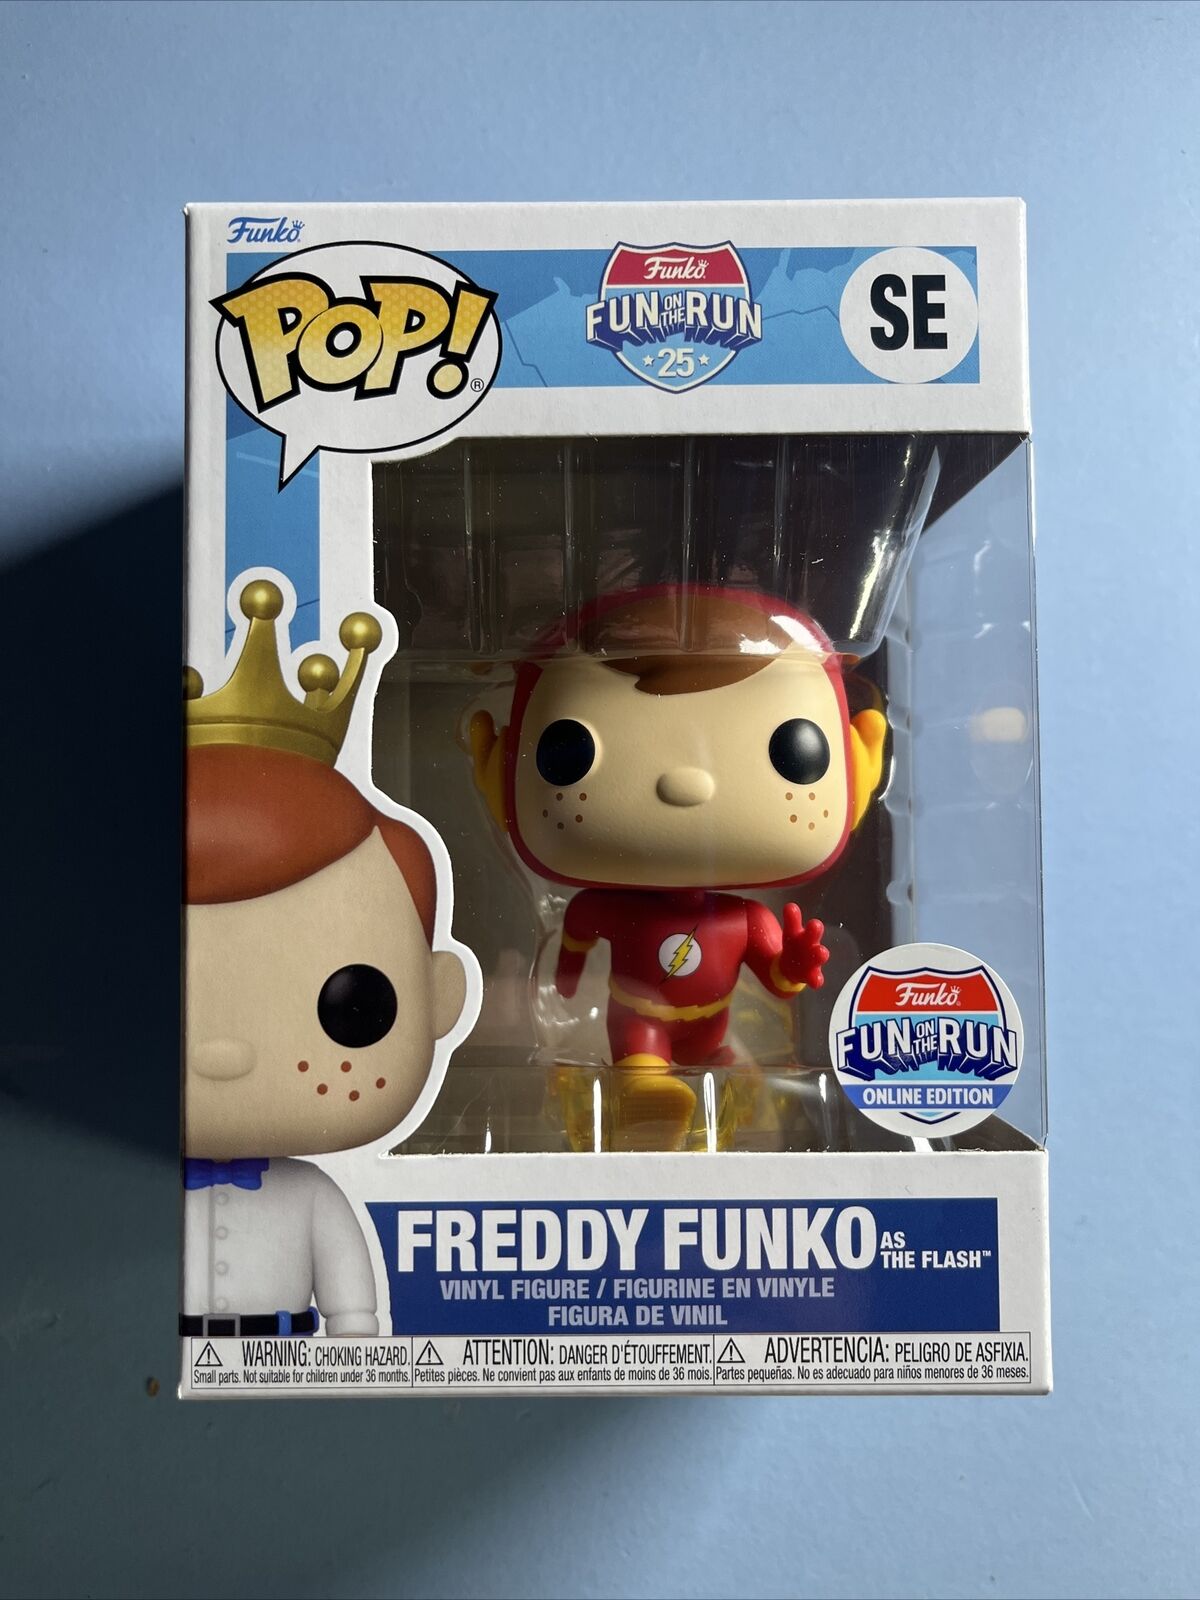 FREDDY FUNKO AS THE FLASH Funko Pop FUN ON THE RUN DC Comics